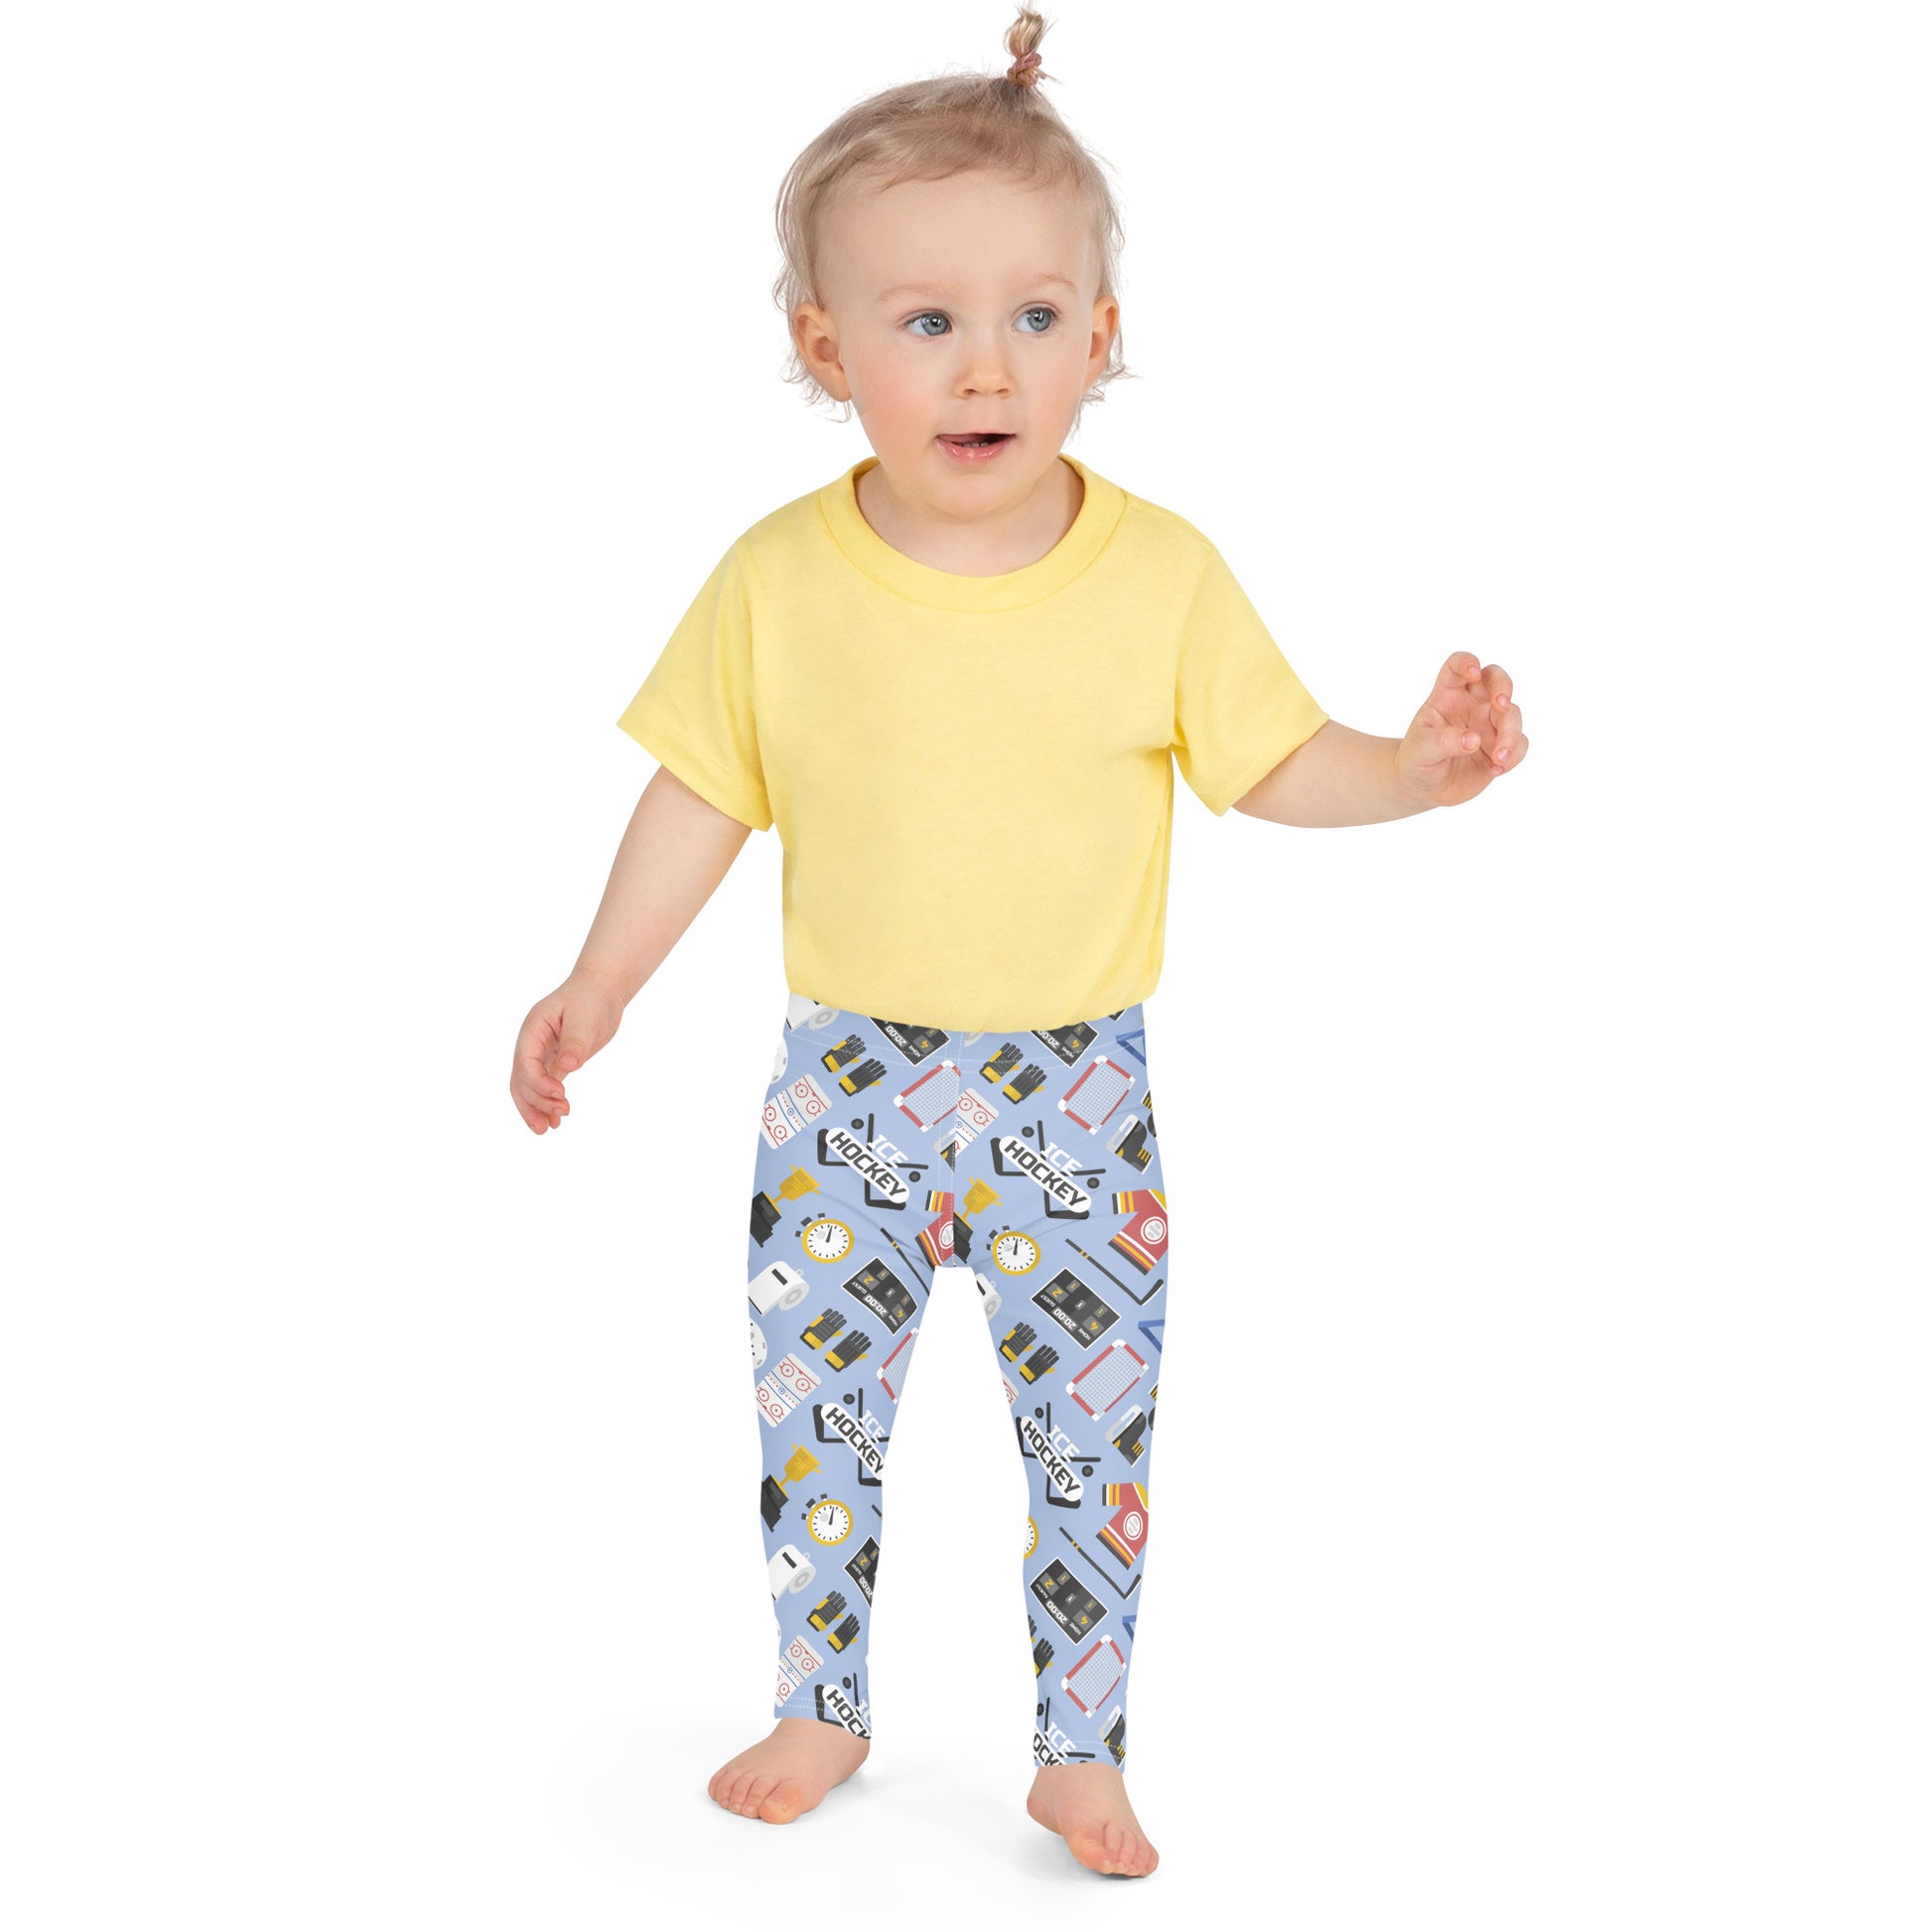 Parent's Choice Training Pants for Boys, Size 3T-4T, 62 Pants